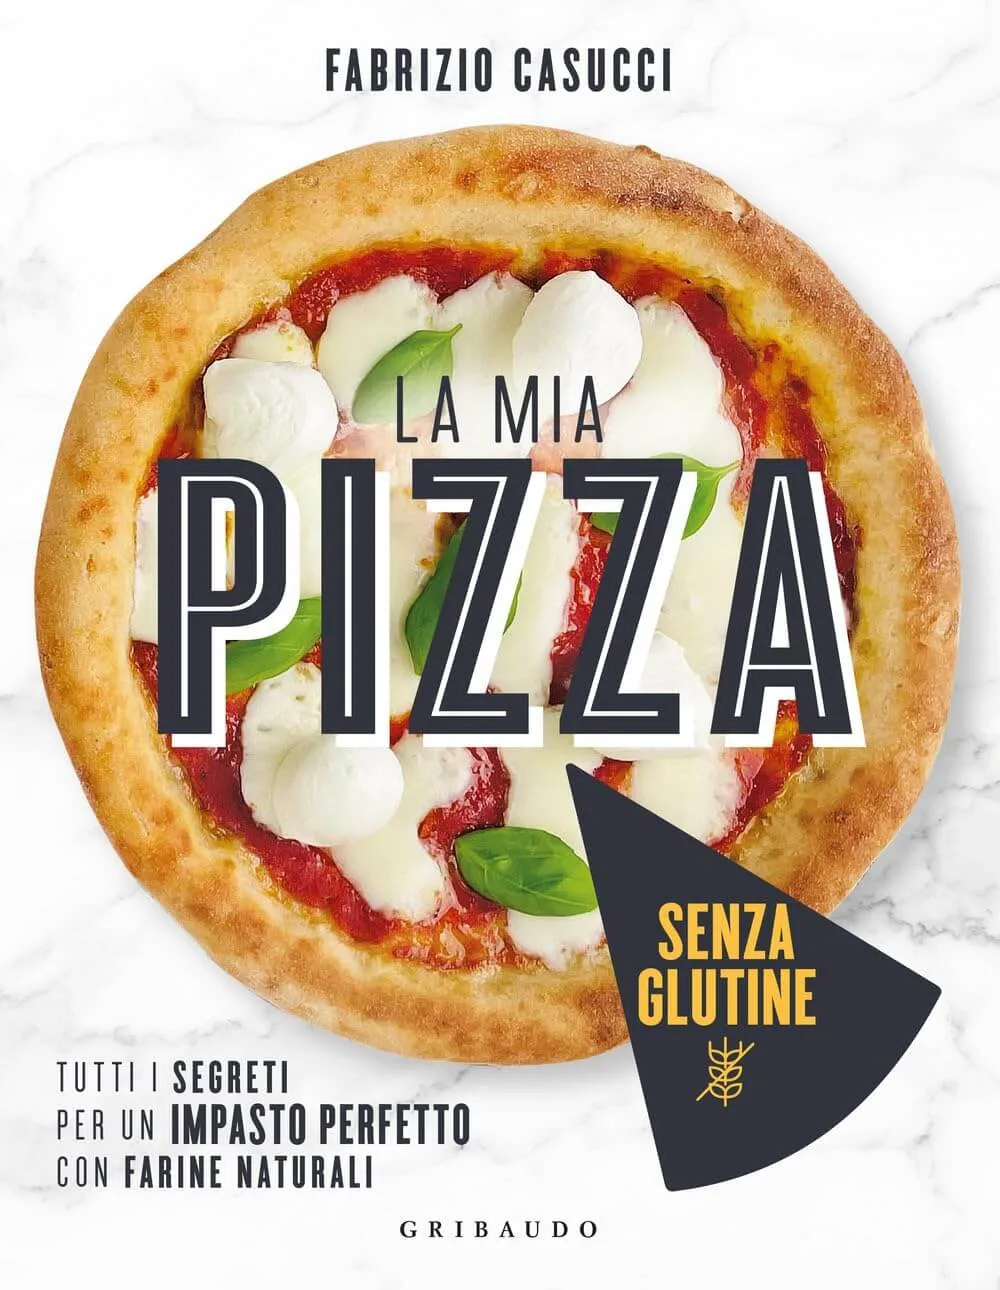 Recensione “La mia pizza senza glutine” di Fabrizio Casucci